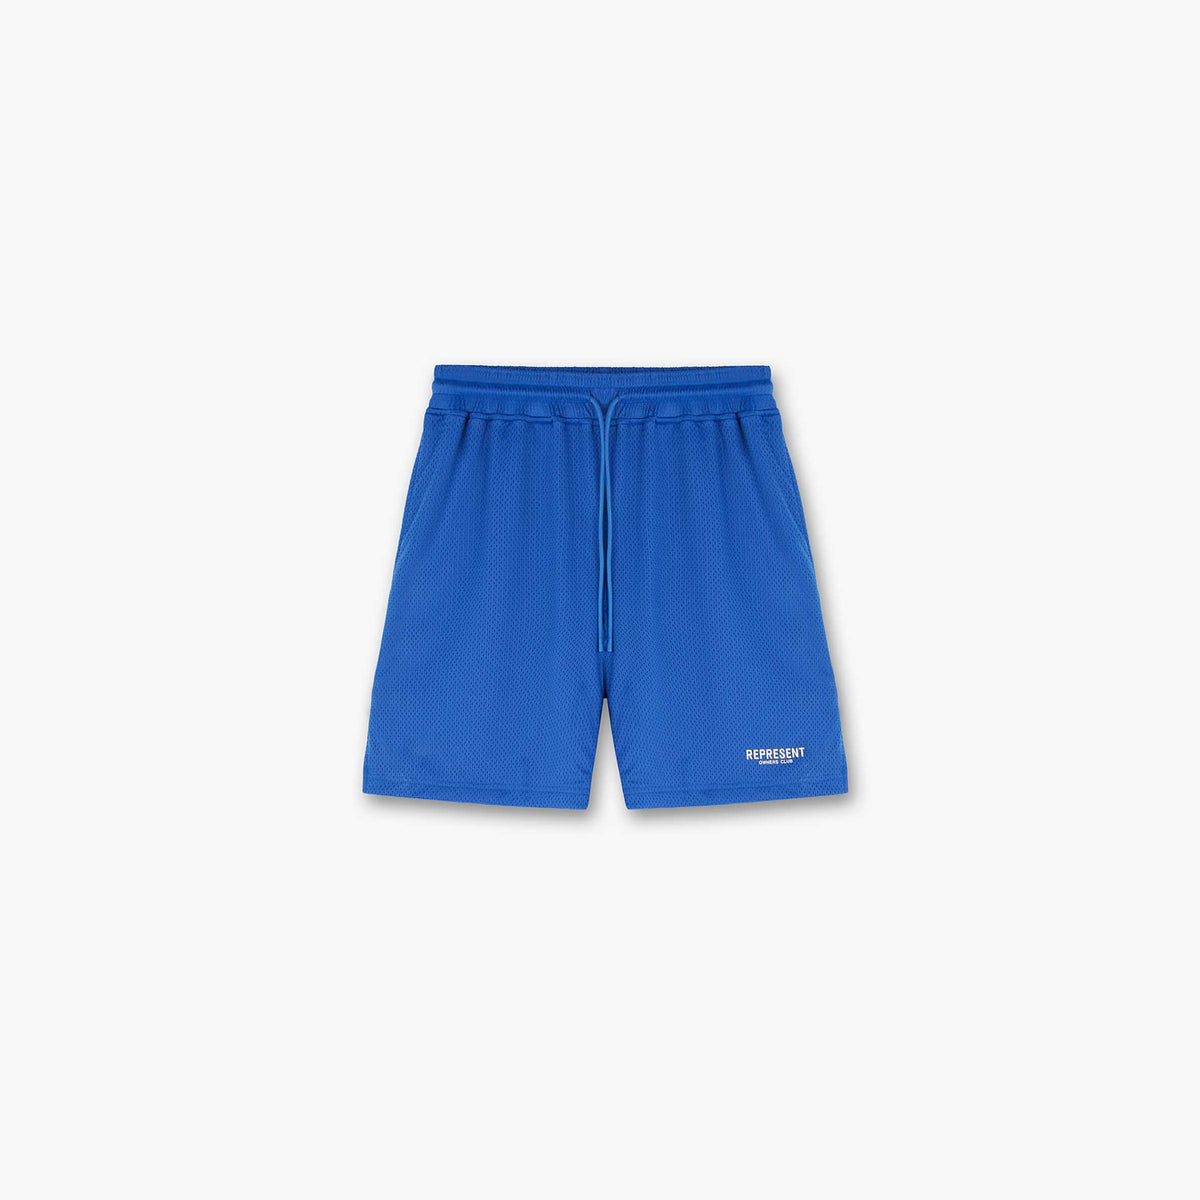 Represent Owners Club Mesh Shorts | Cobalt Shorts | Represent ...